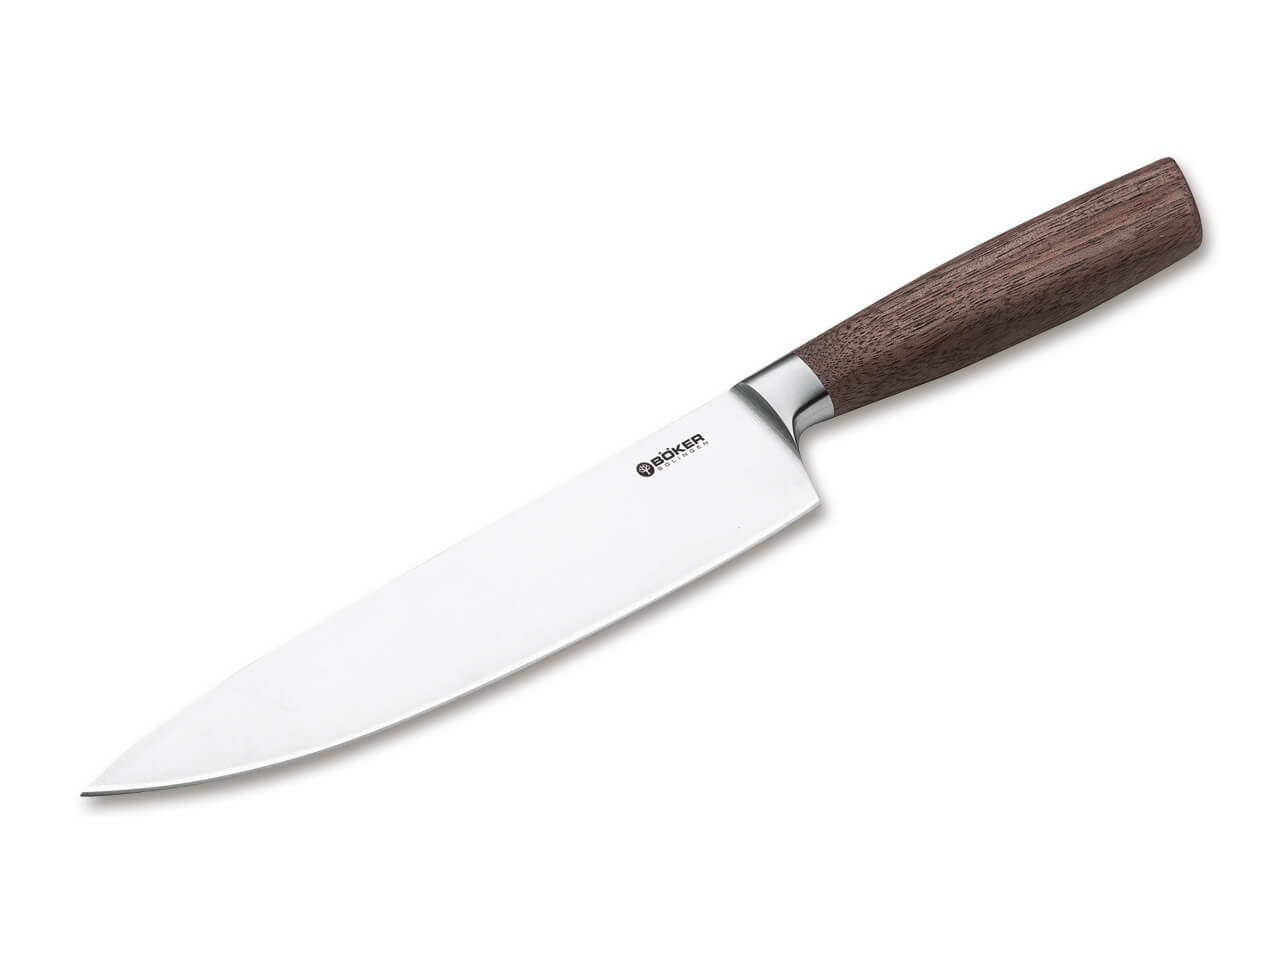 https://www.bokerusa.com/media/image/11/89/20/boeker-manufaktur-solingen-core-chef-s-knife-130740.jpg